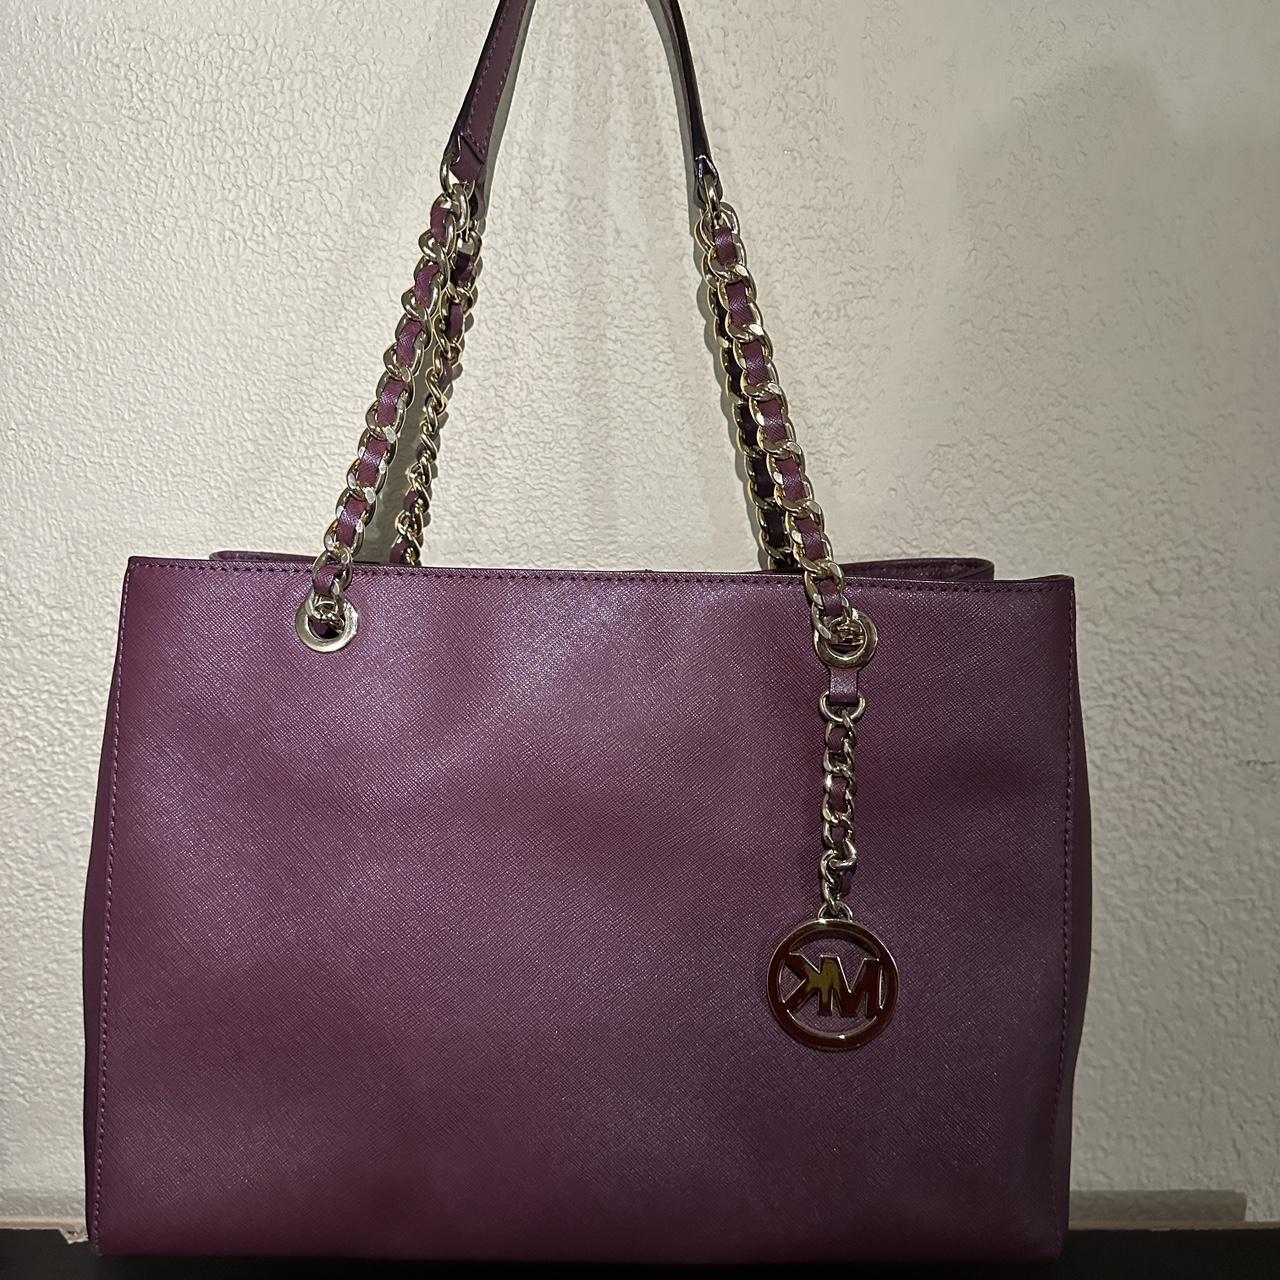 Michael Kors Soho Quilted Leather Large Shoulder Crossbody Bag -lavender/ purple - Michael Kors bag - 194900555378 | Fash Brands